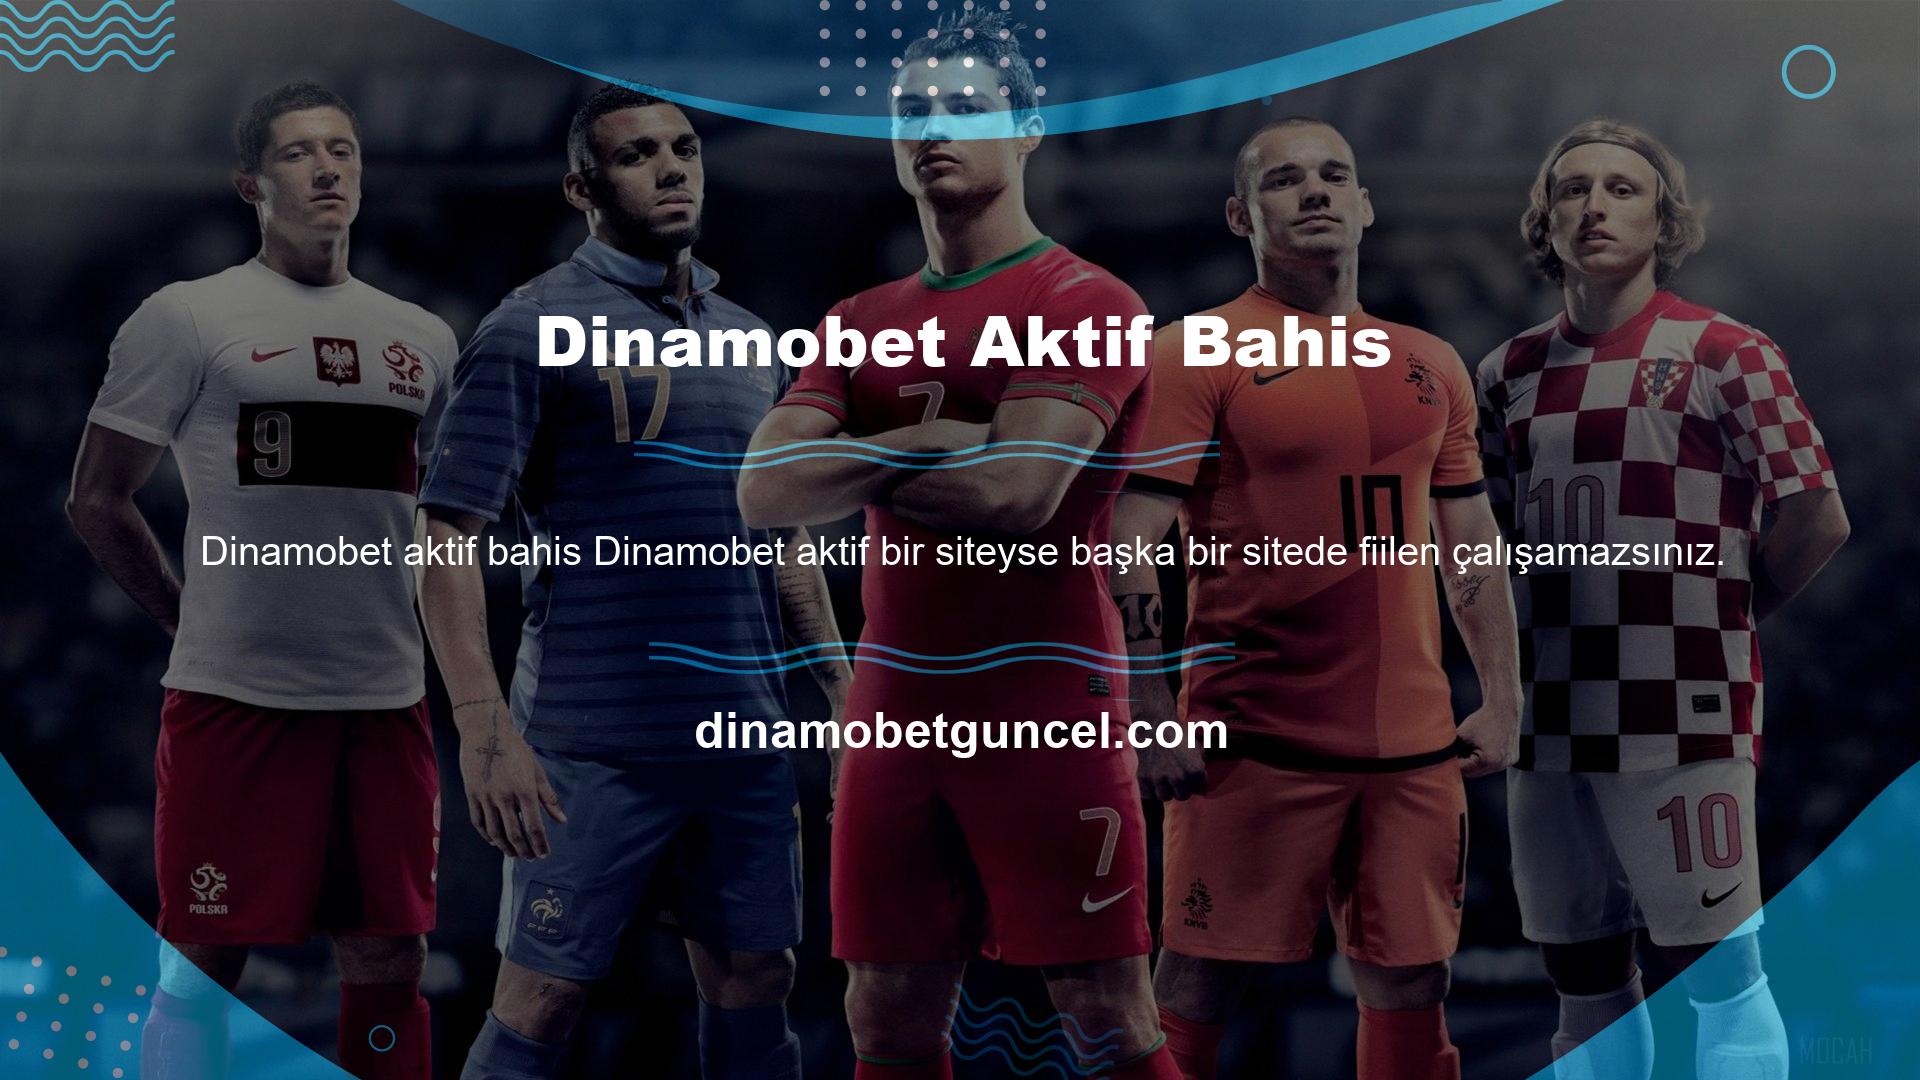 Bugün kullanıcıları Dinamobet web sitesinden yönlendirirsem, Dinamobet hükümeti için bir utanç olur